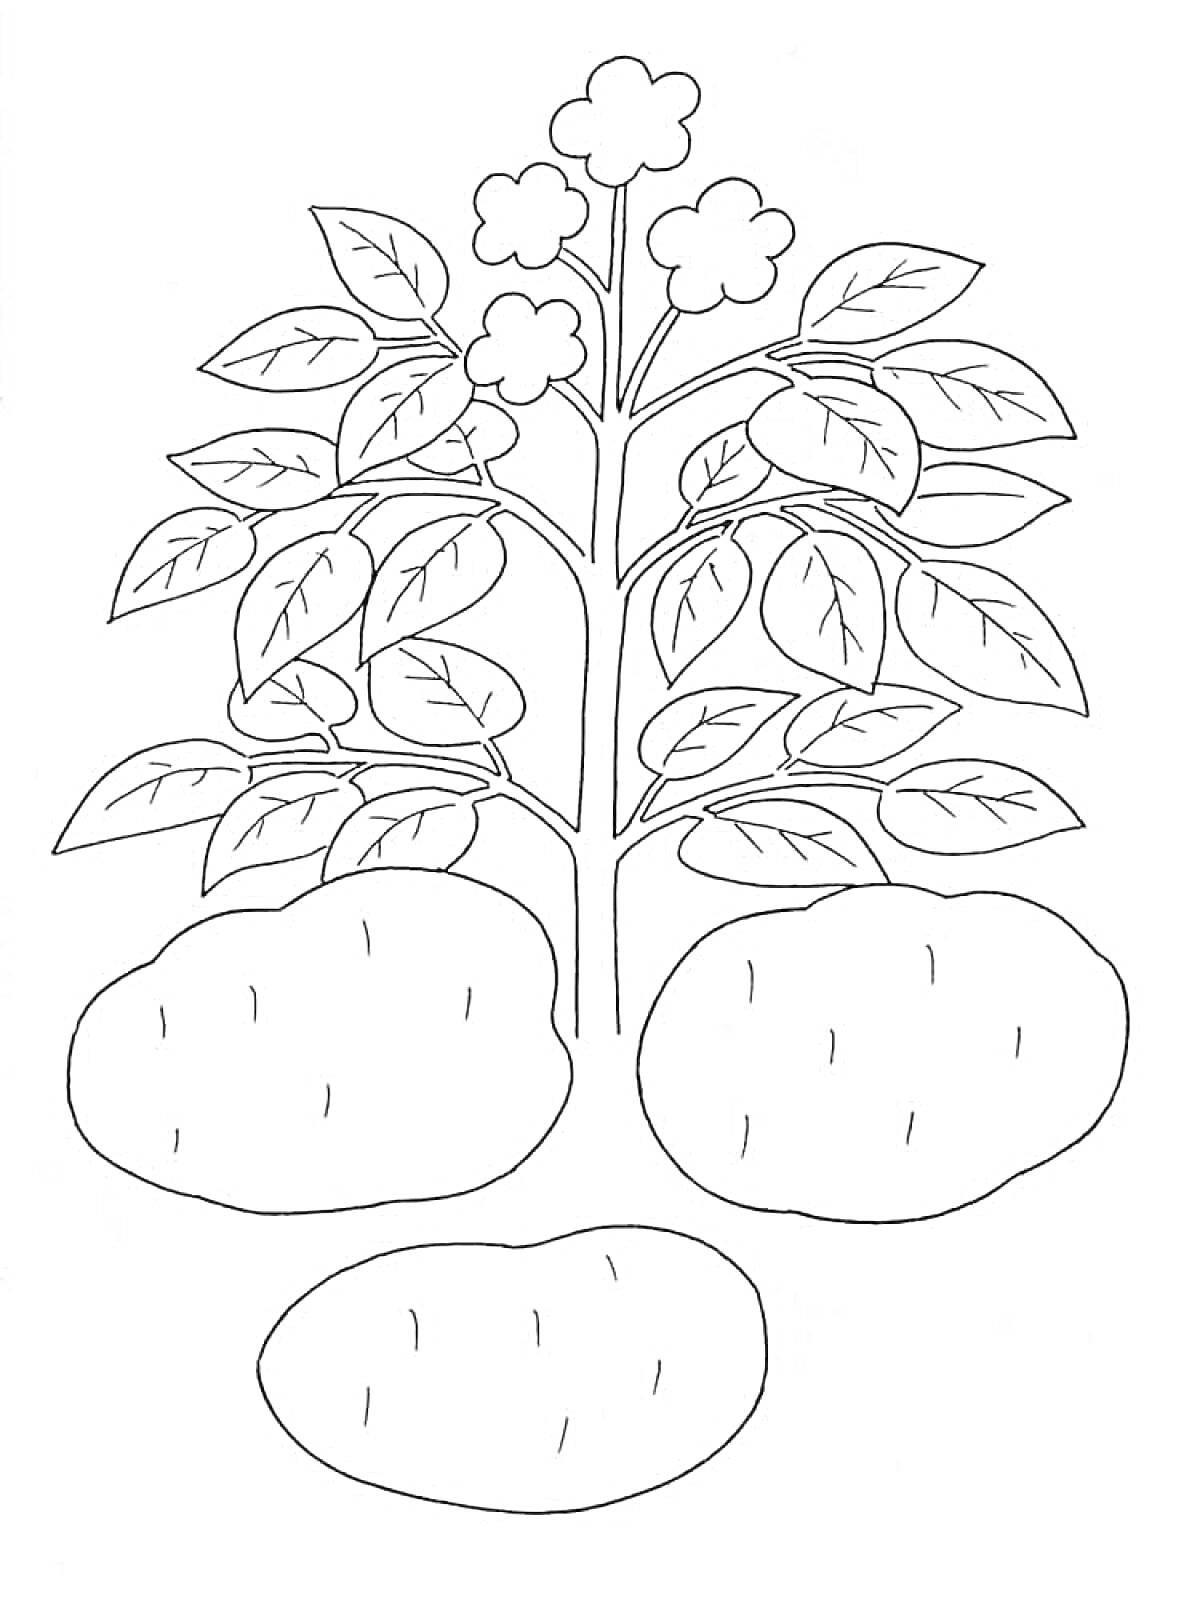 Раскраска Растение картофеля с листьями и цветами, три клубня картофеля